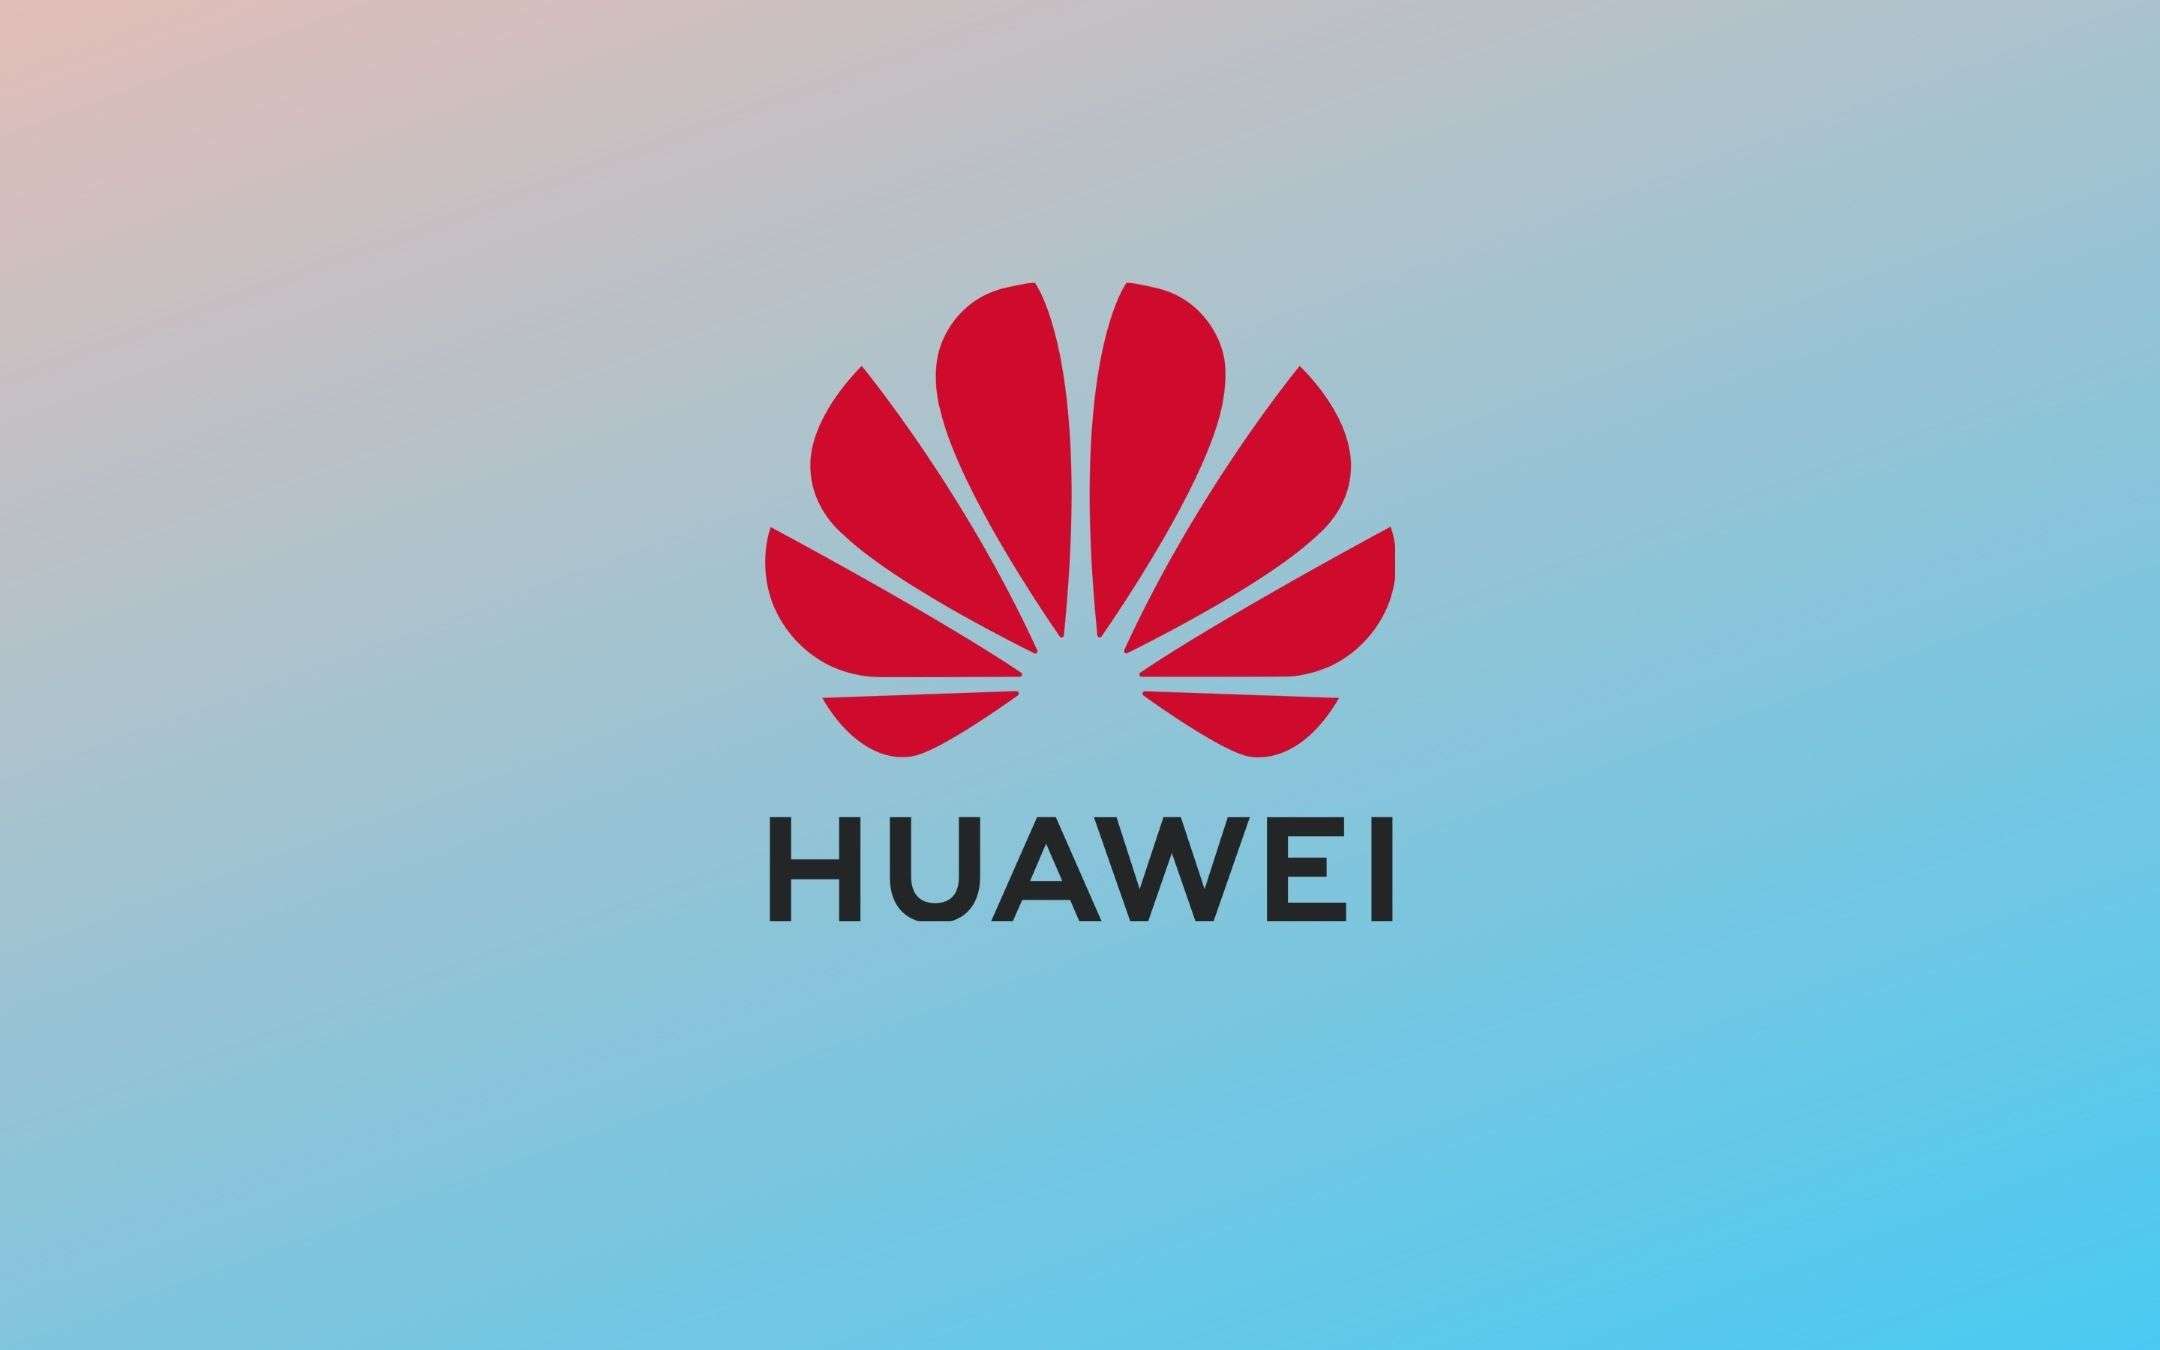 Huawei venderà smartphone di altri brand nei suoi store?